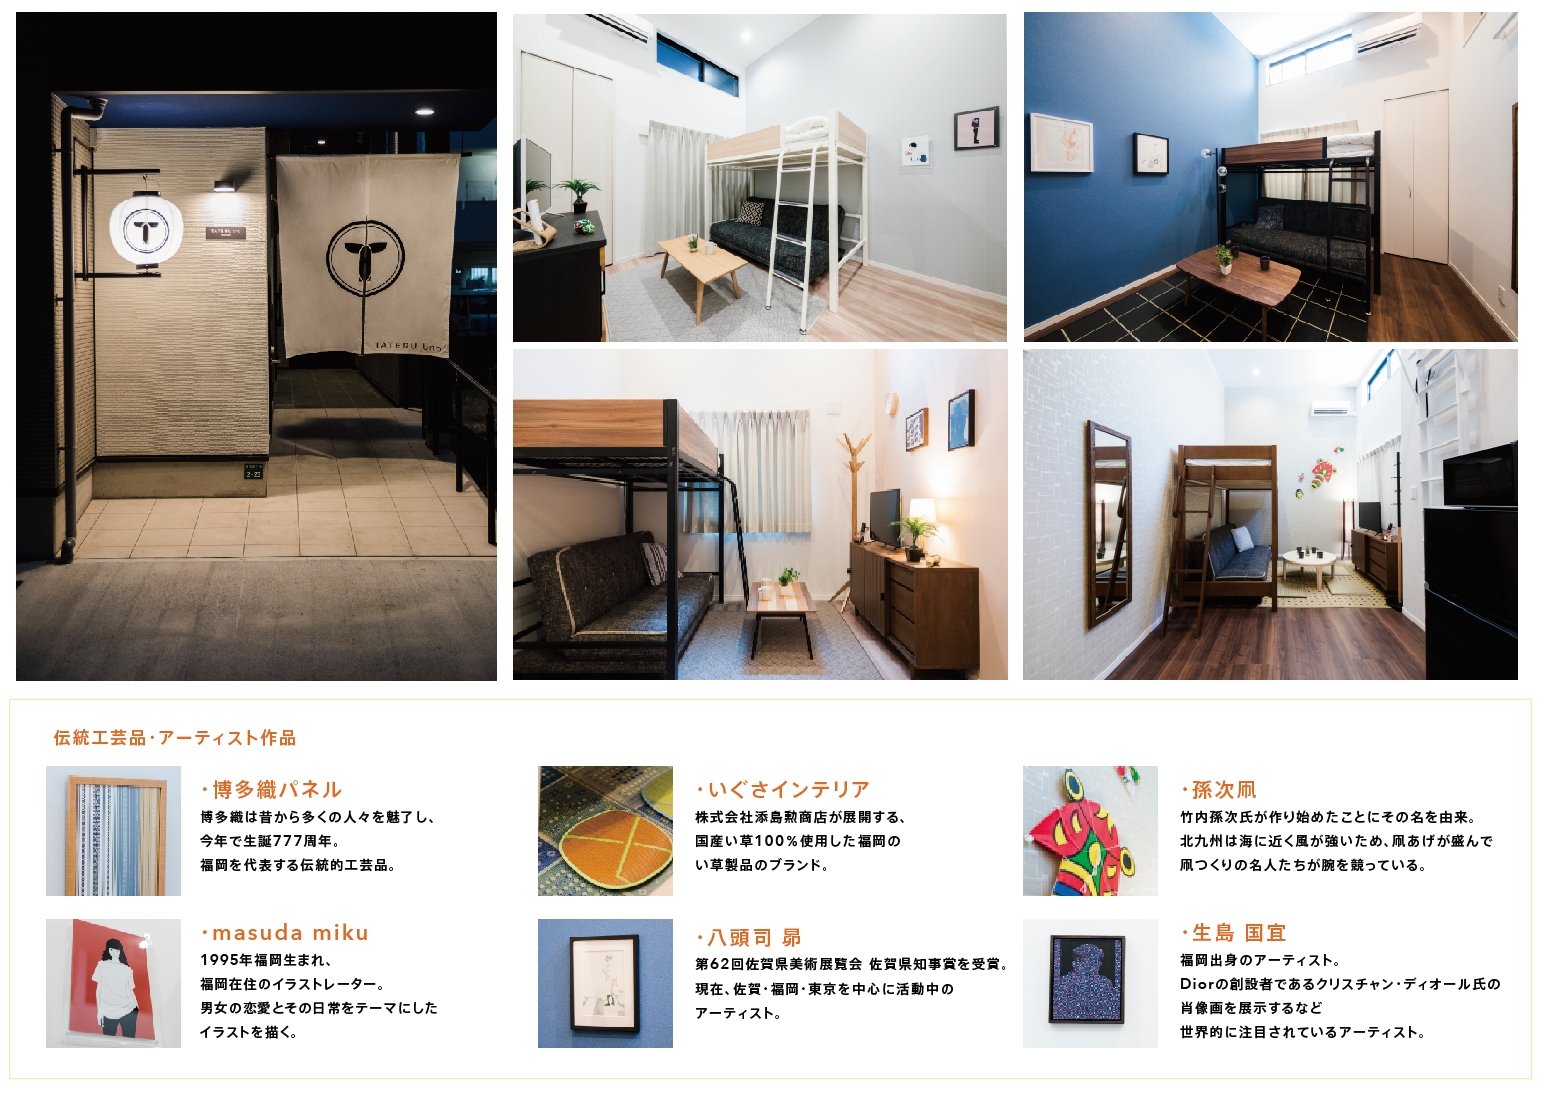 アプリでかんたんiot民泊運用 Tateru Bnb 福岡市中心部でiot民泊アパートを8月2日に3棟同時オープン 地域の魅力を体験できるスマートbnb タテルのプレスリリース